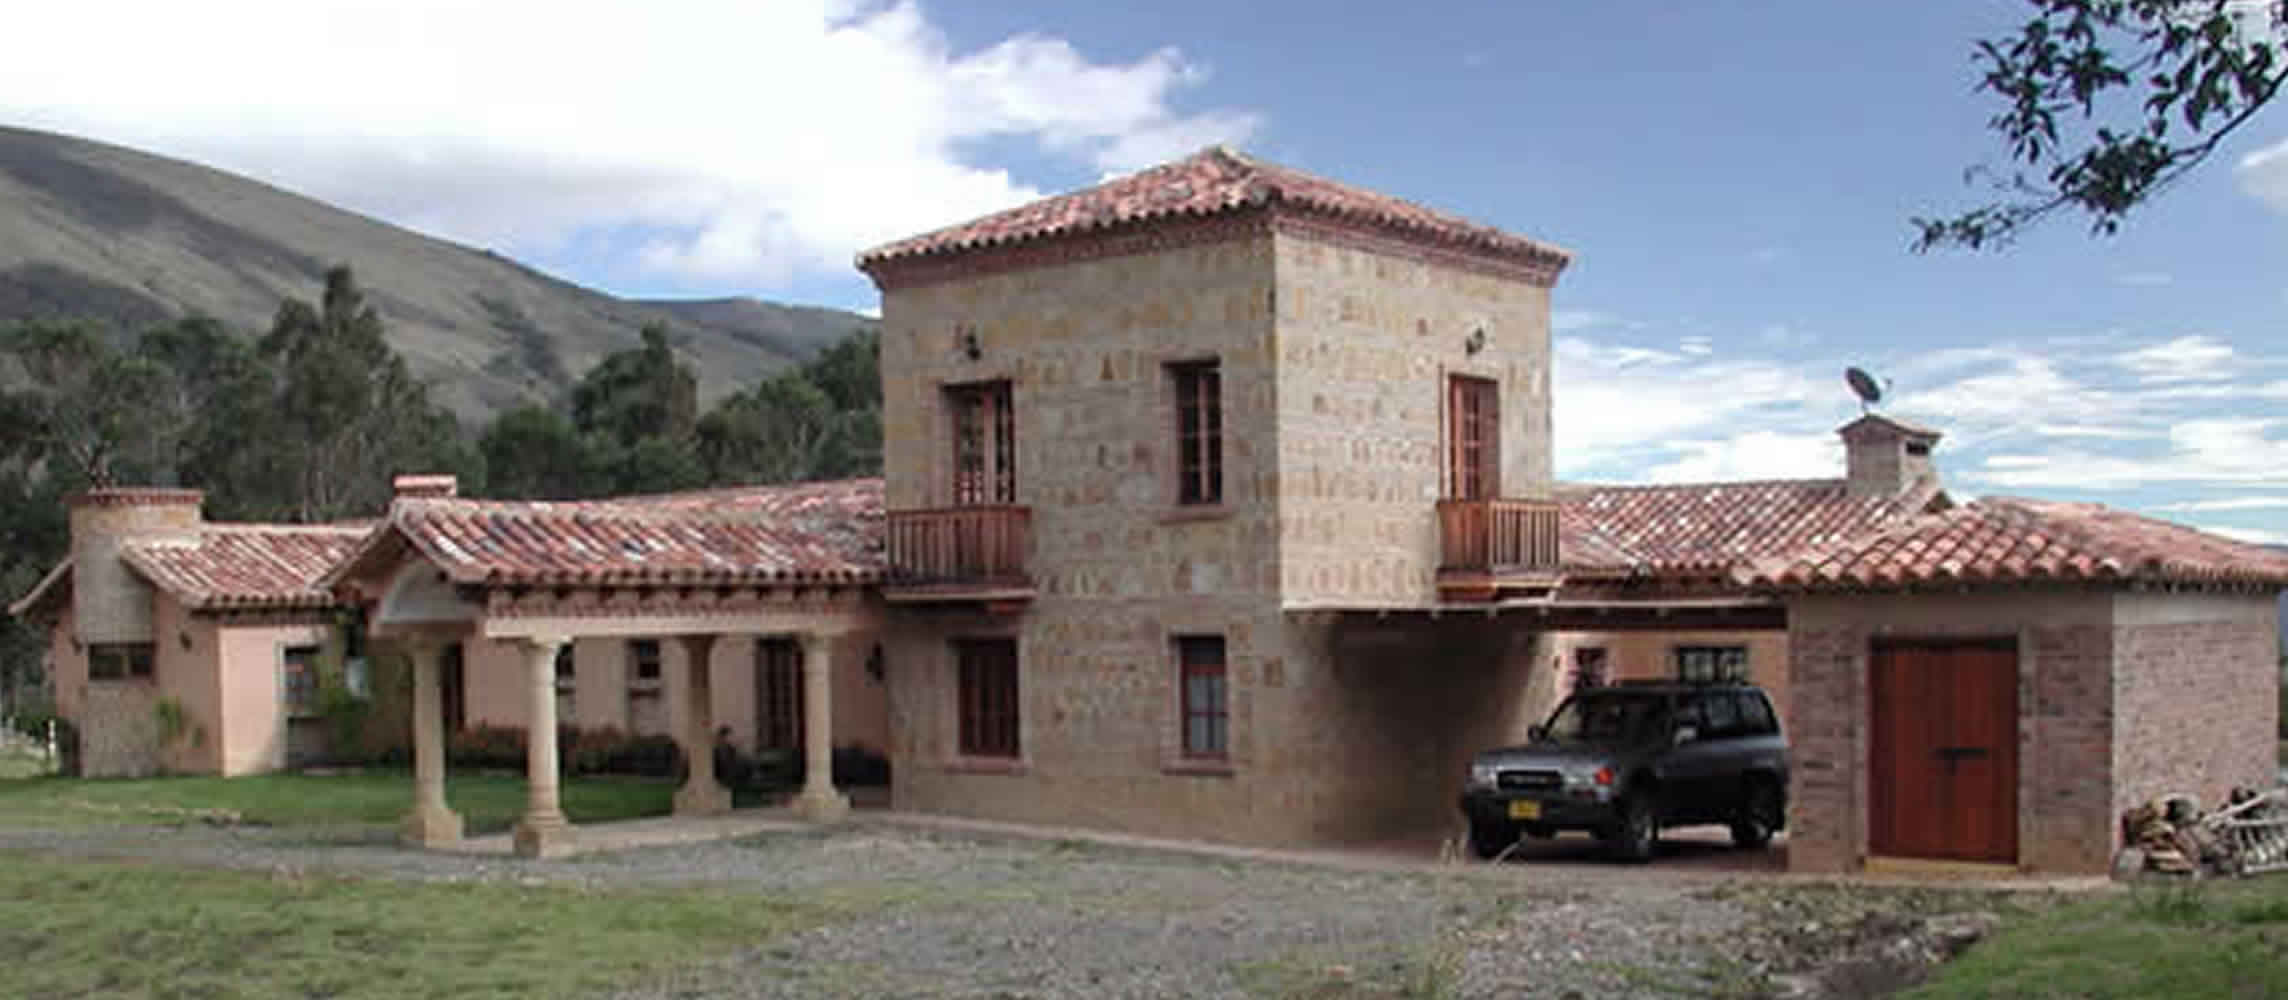 Casa Topanga en Villa de Leyva - Arquitecto Pedro Carvajal